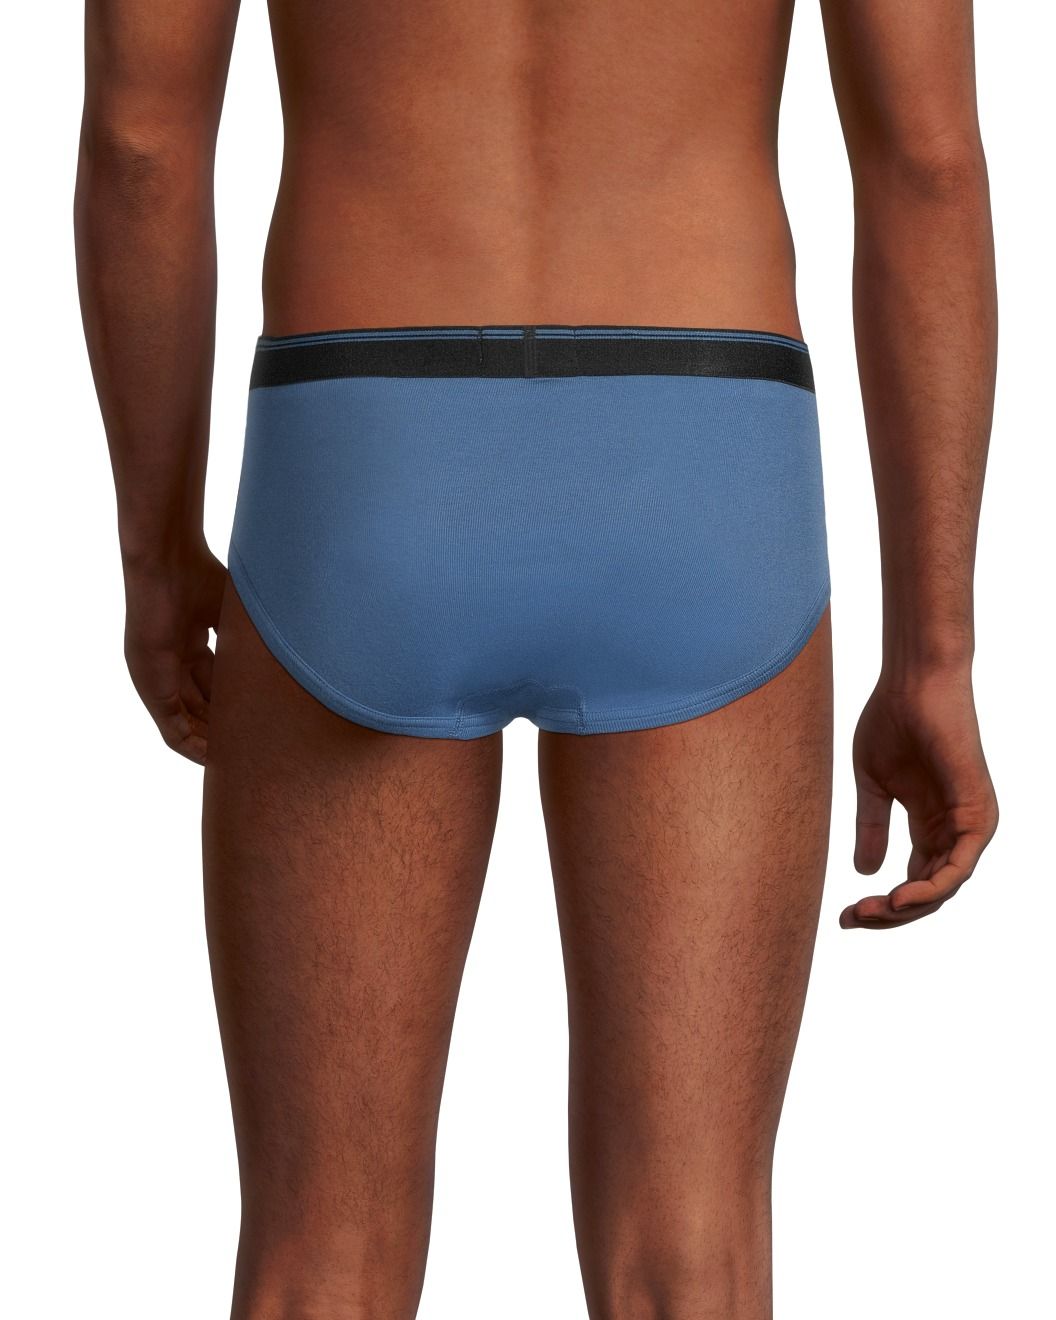 Denver Hayes Men's 3 Pack Basic Briefs Underwear